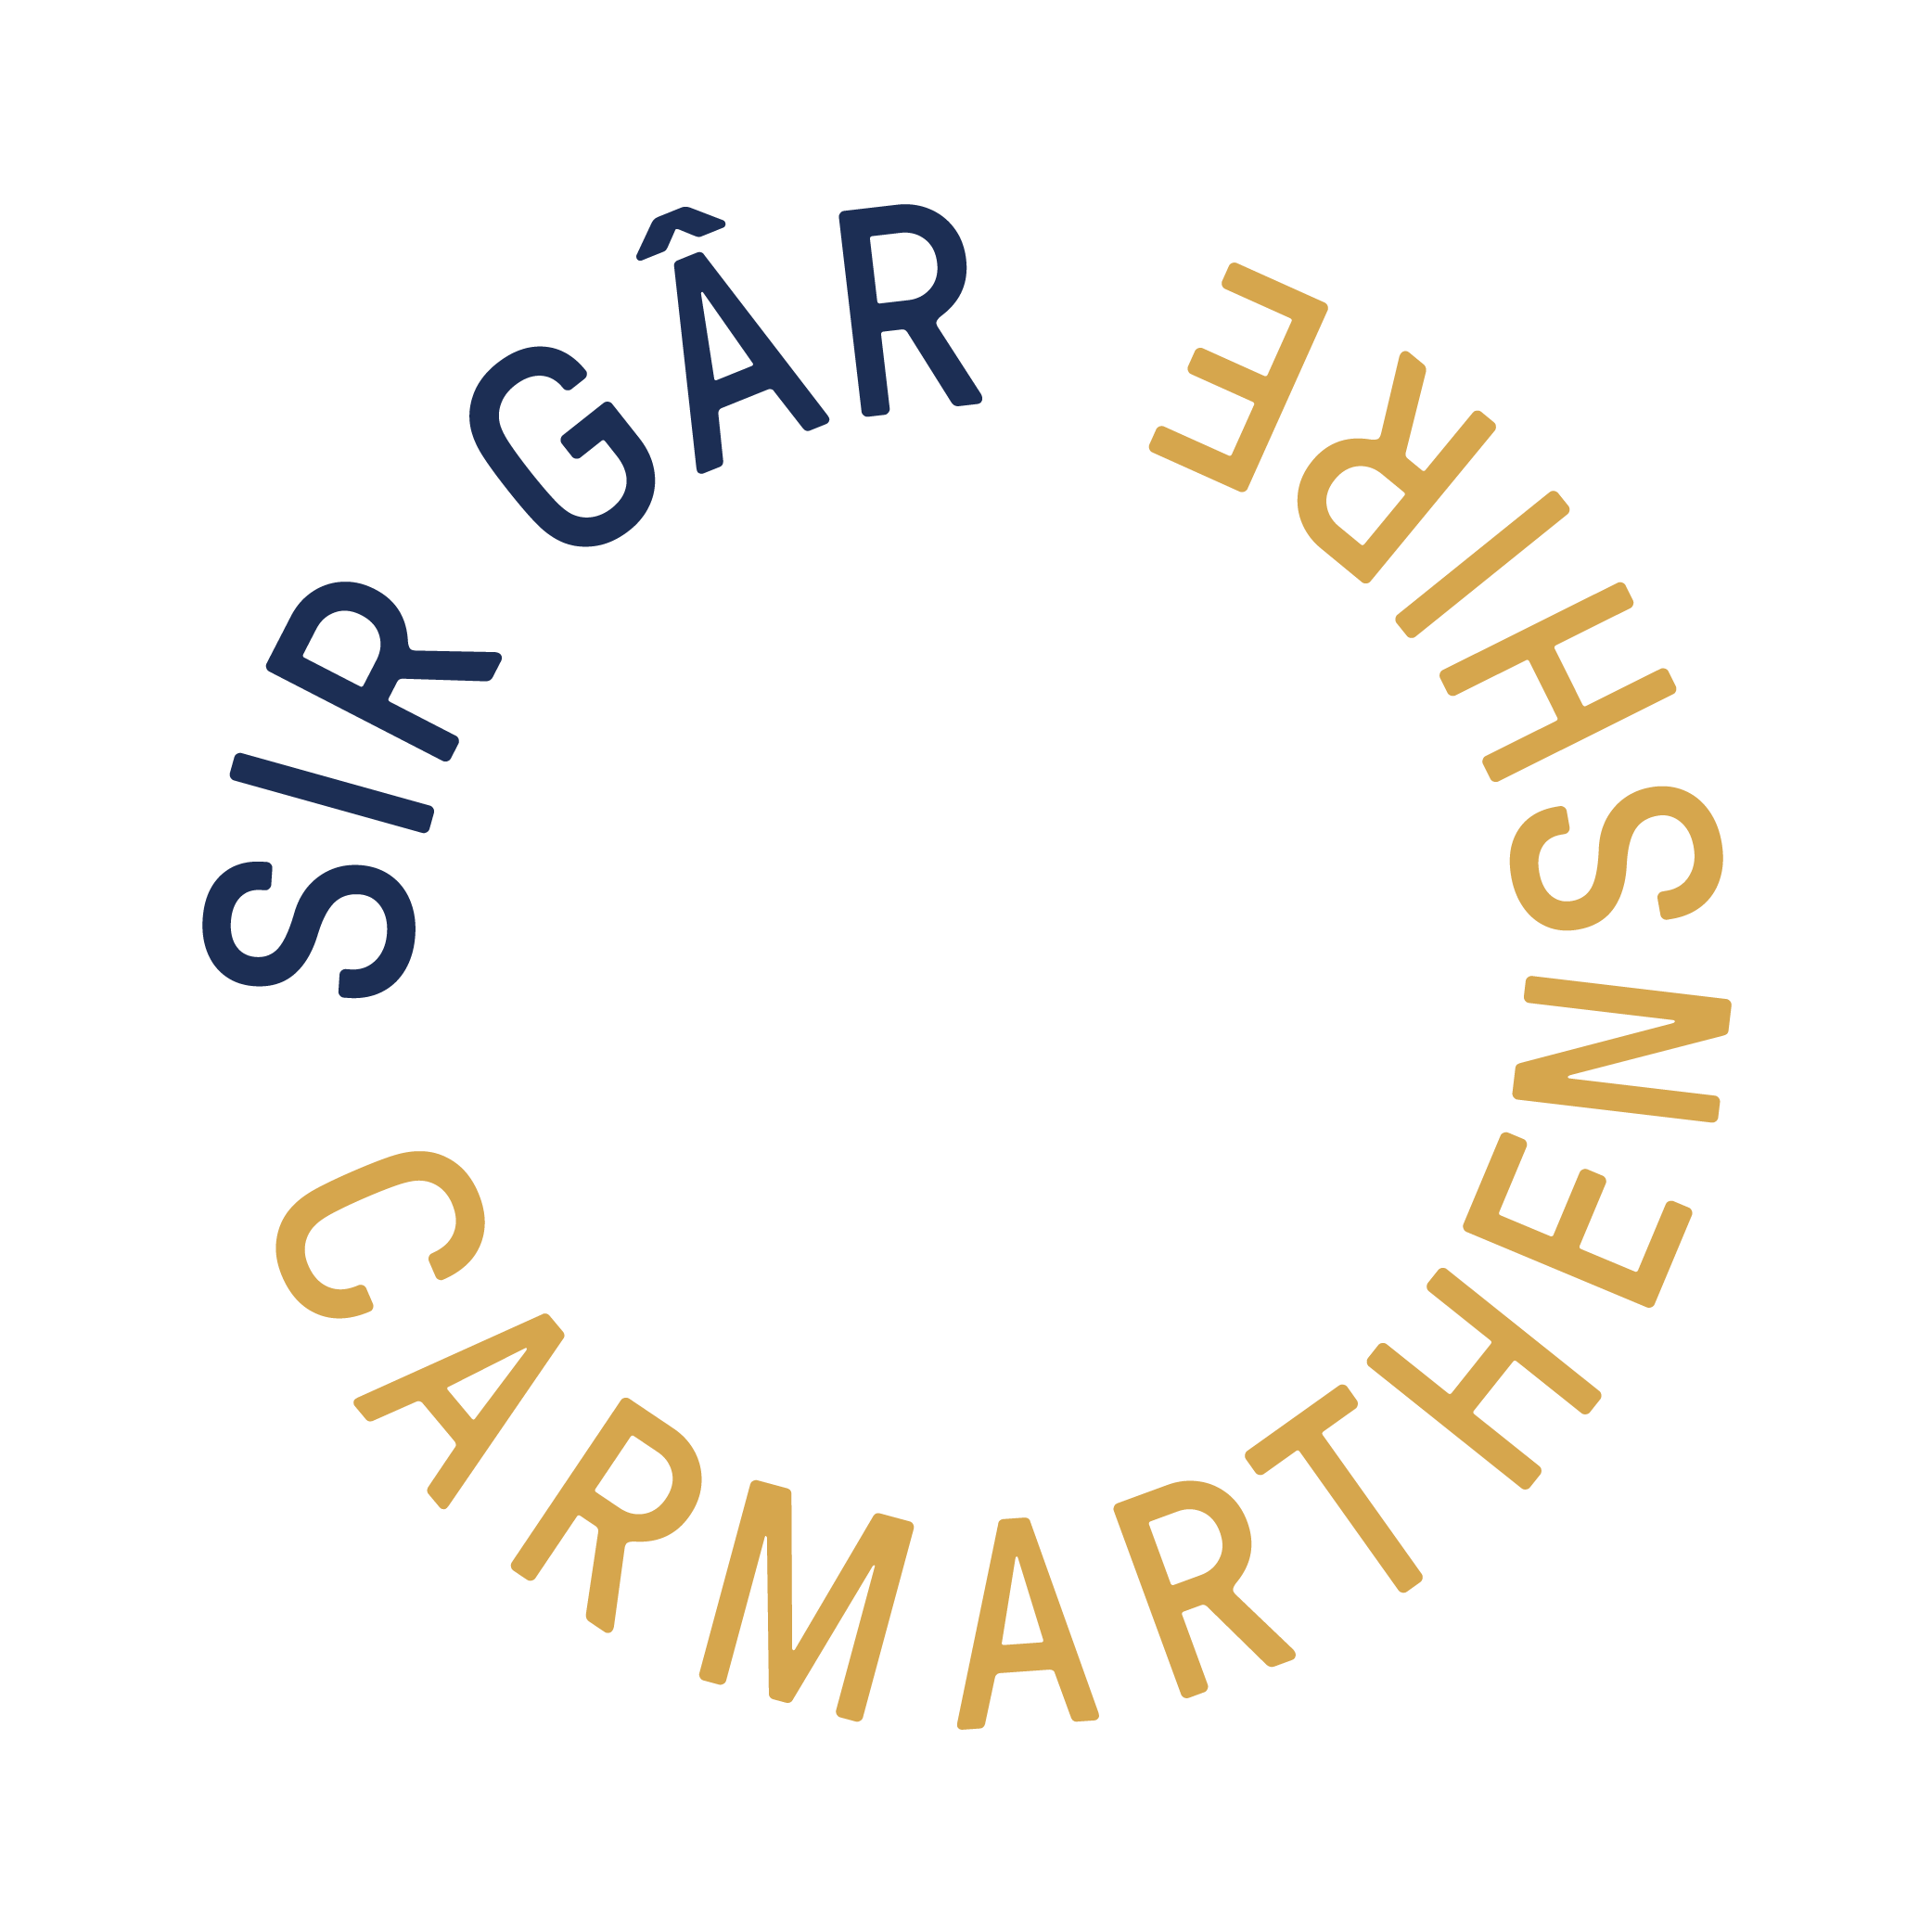 Carmarthenshire county council